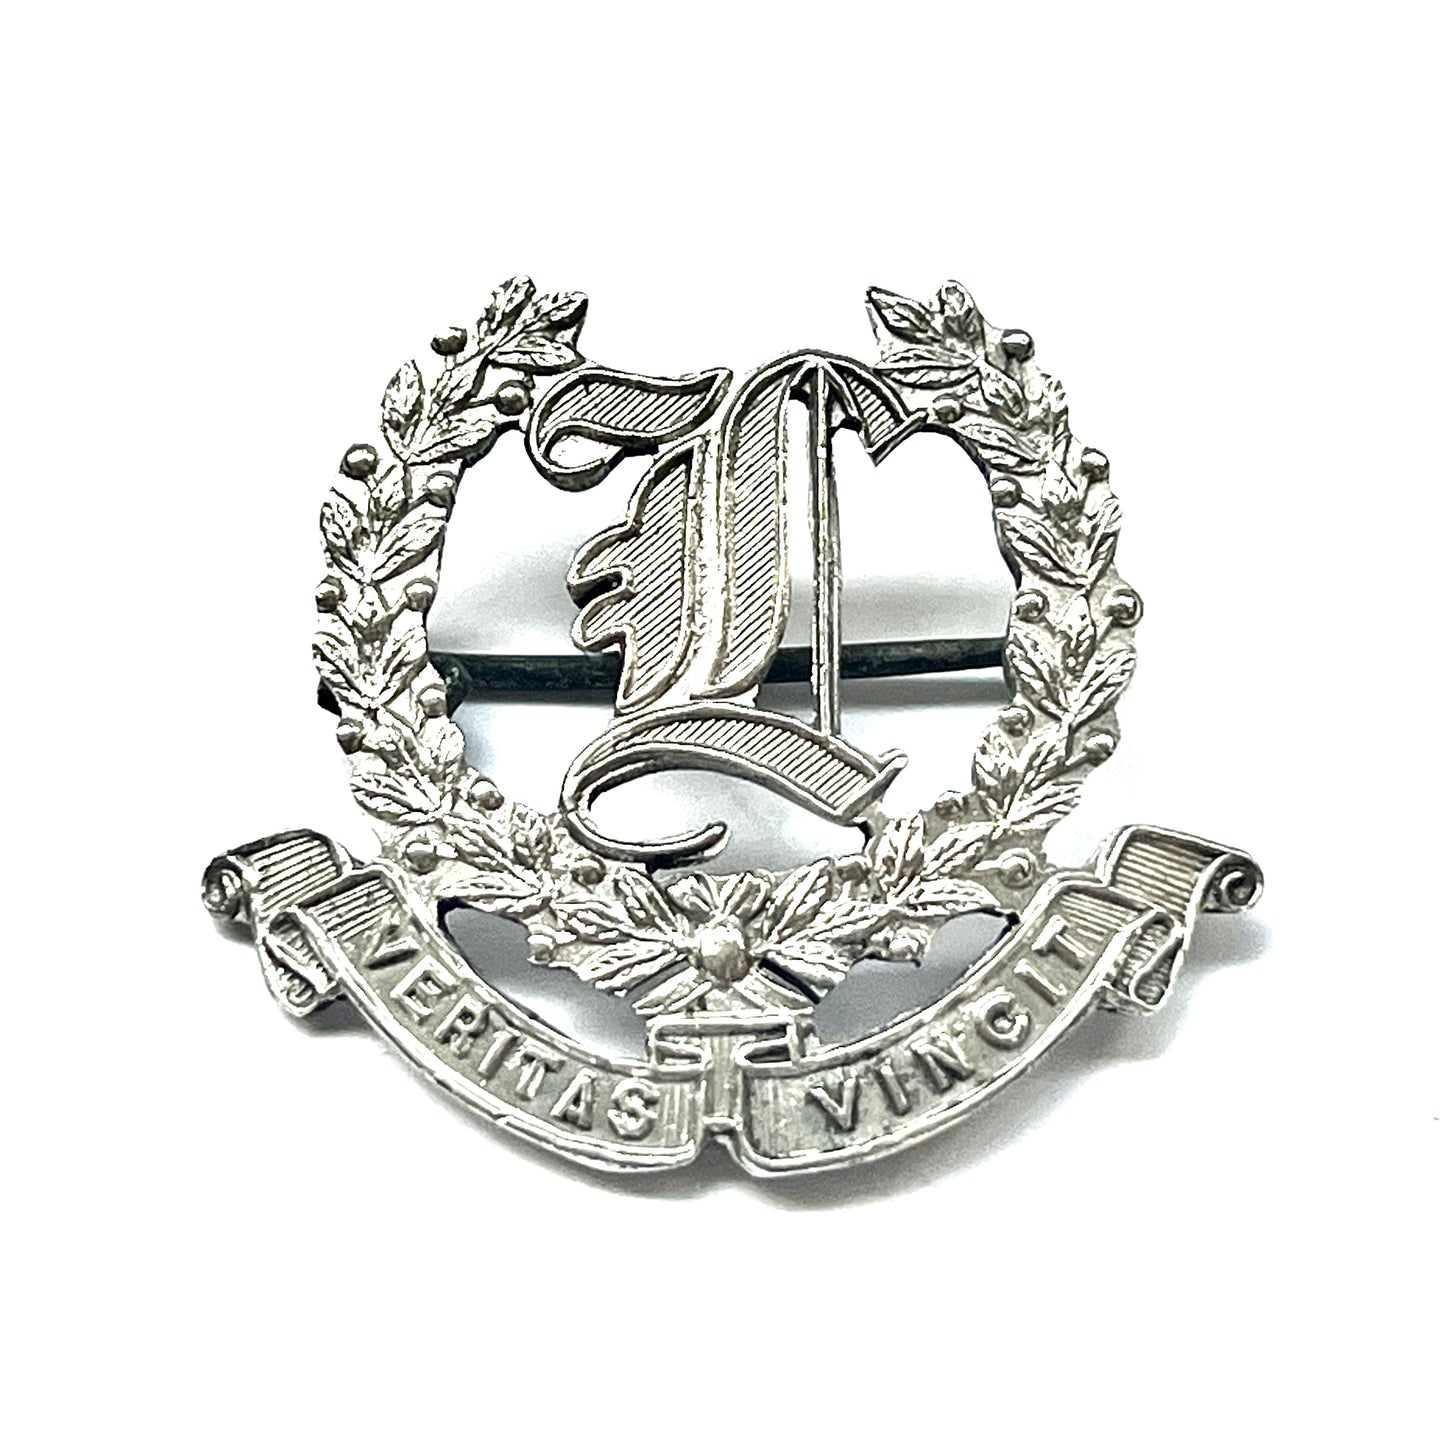 第一次世界大战至第二次世界大战初期 Bridgland &amp; King 纯银澳大利亚陆军炮兵射击熟练徽章